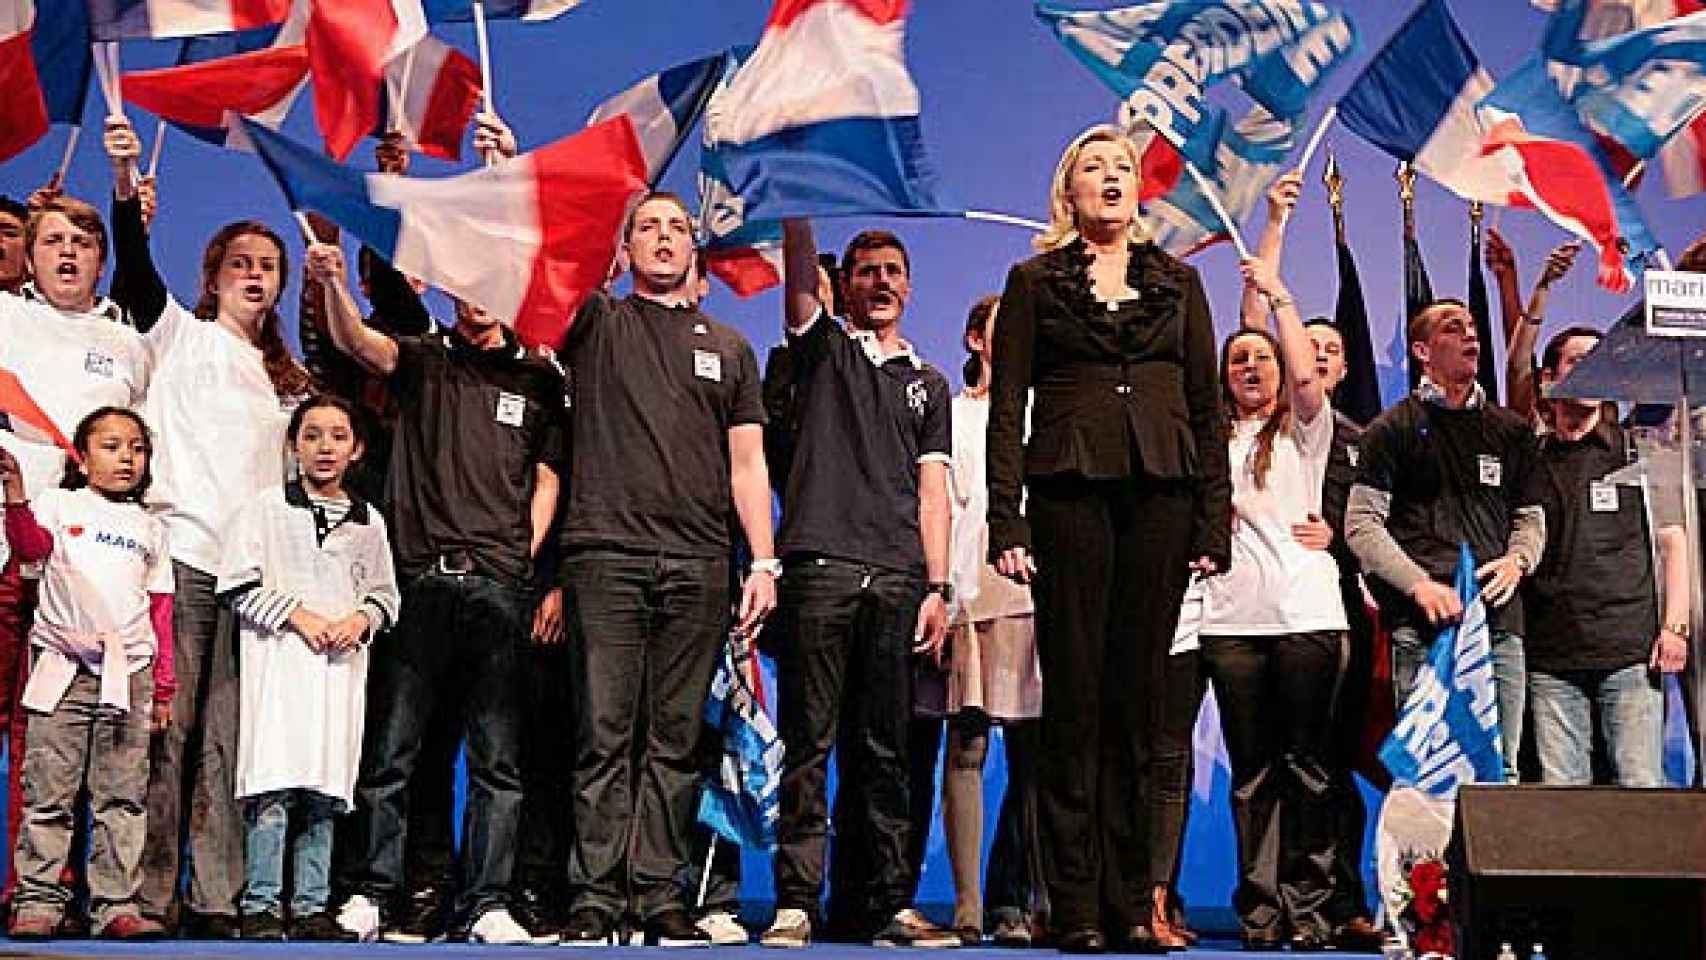 La líder del Frente Nacional, Marine Le Pen, en un acto de su partido